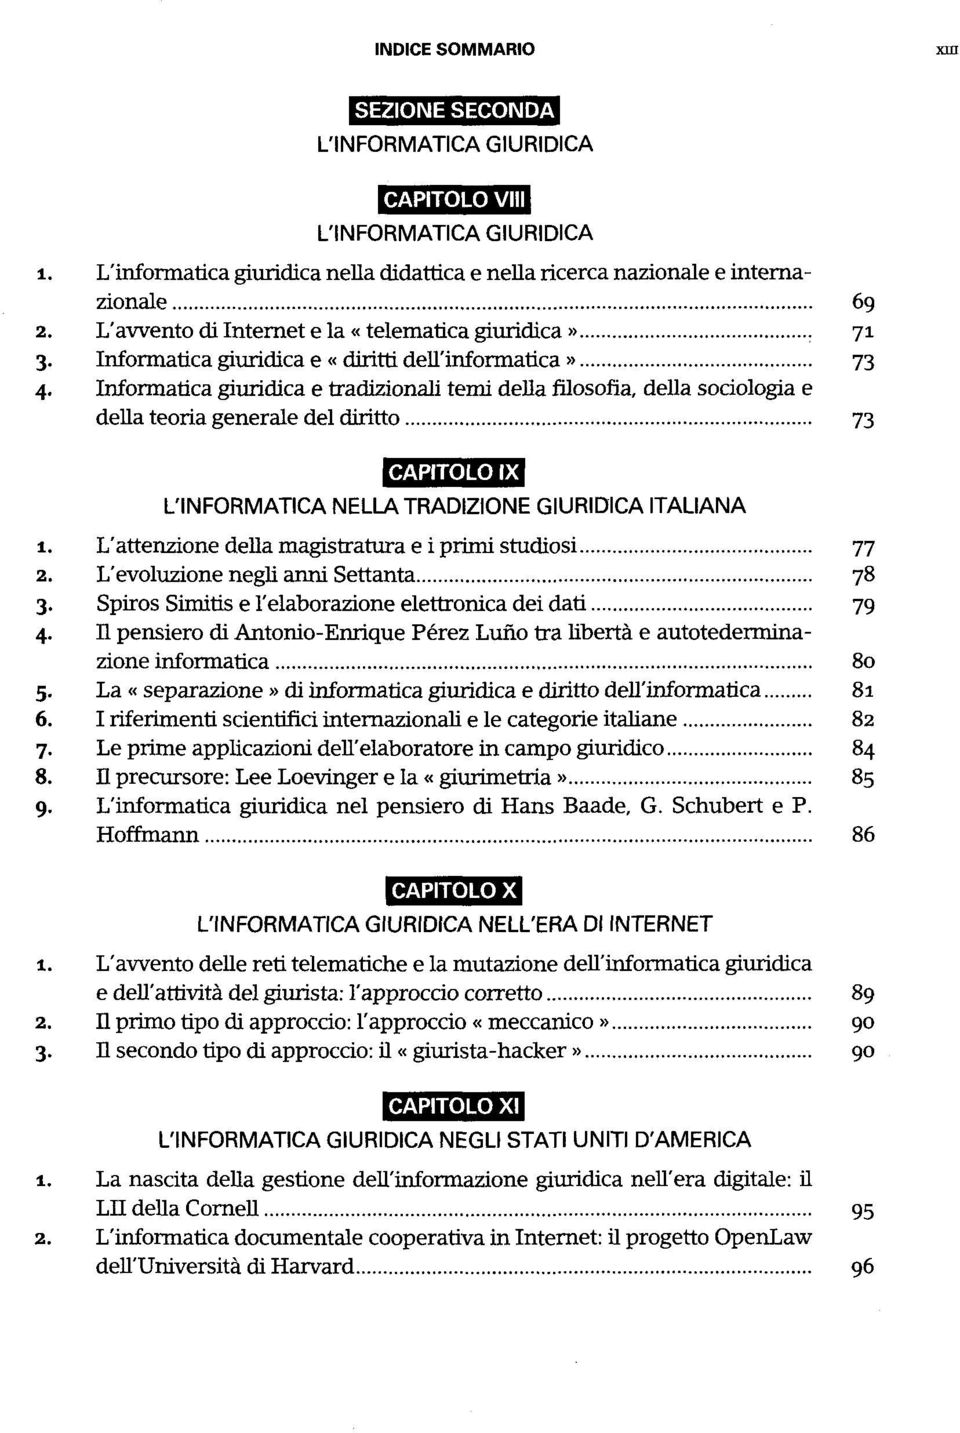 Informatica giuridica e tradizionali temi della filosofia, della sociologia e della teoria generale del diritto 73 CAPITOLO IX L'INFORMATICA NELLA TRADIZIONE GIURIDICA ITALIANA 1.